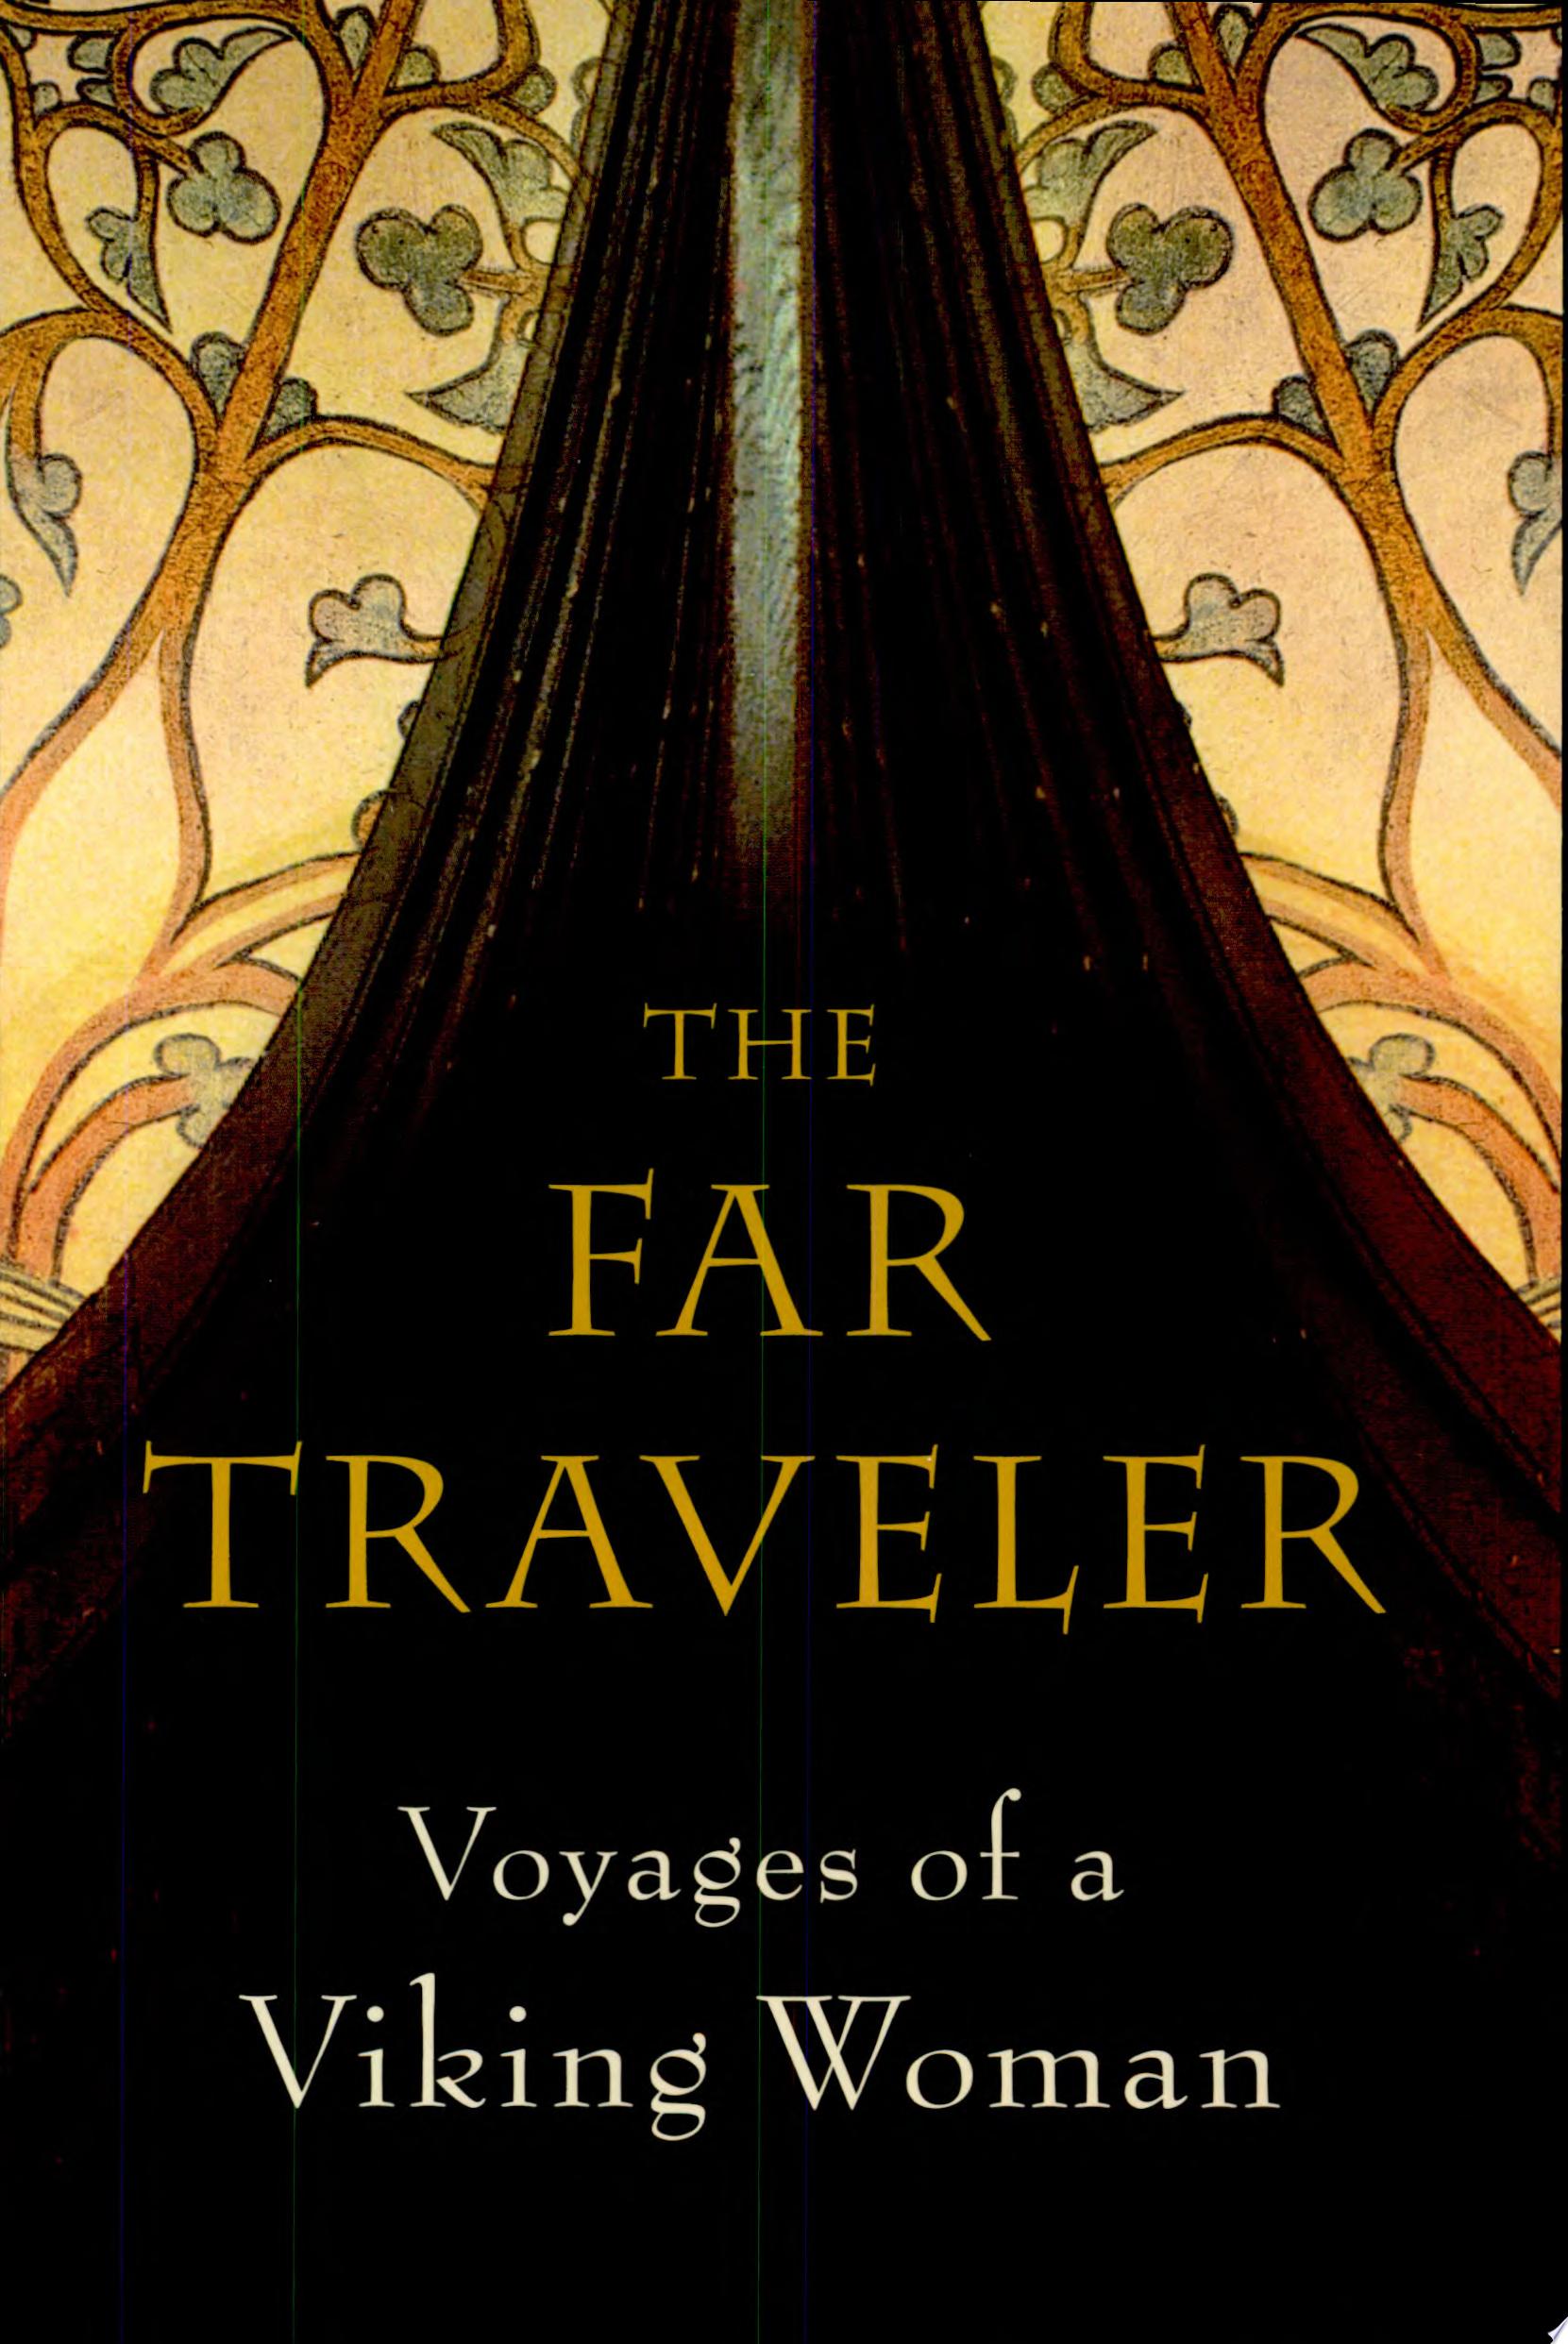 Image for "The Far Traveler"